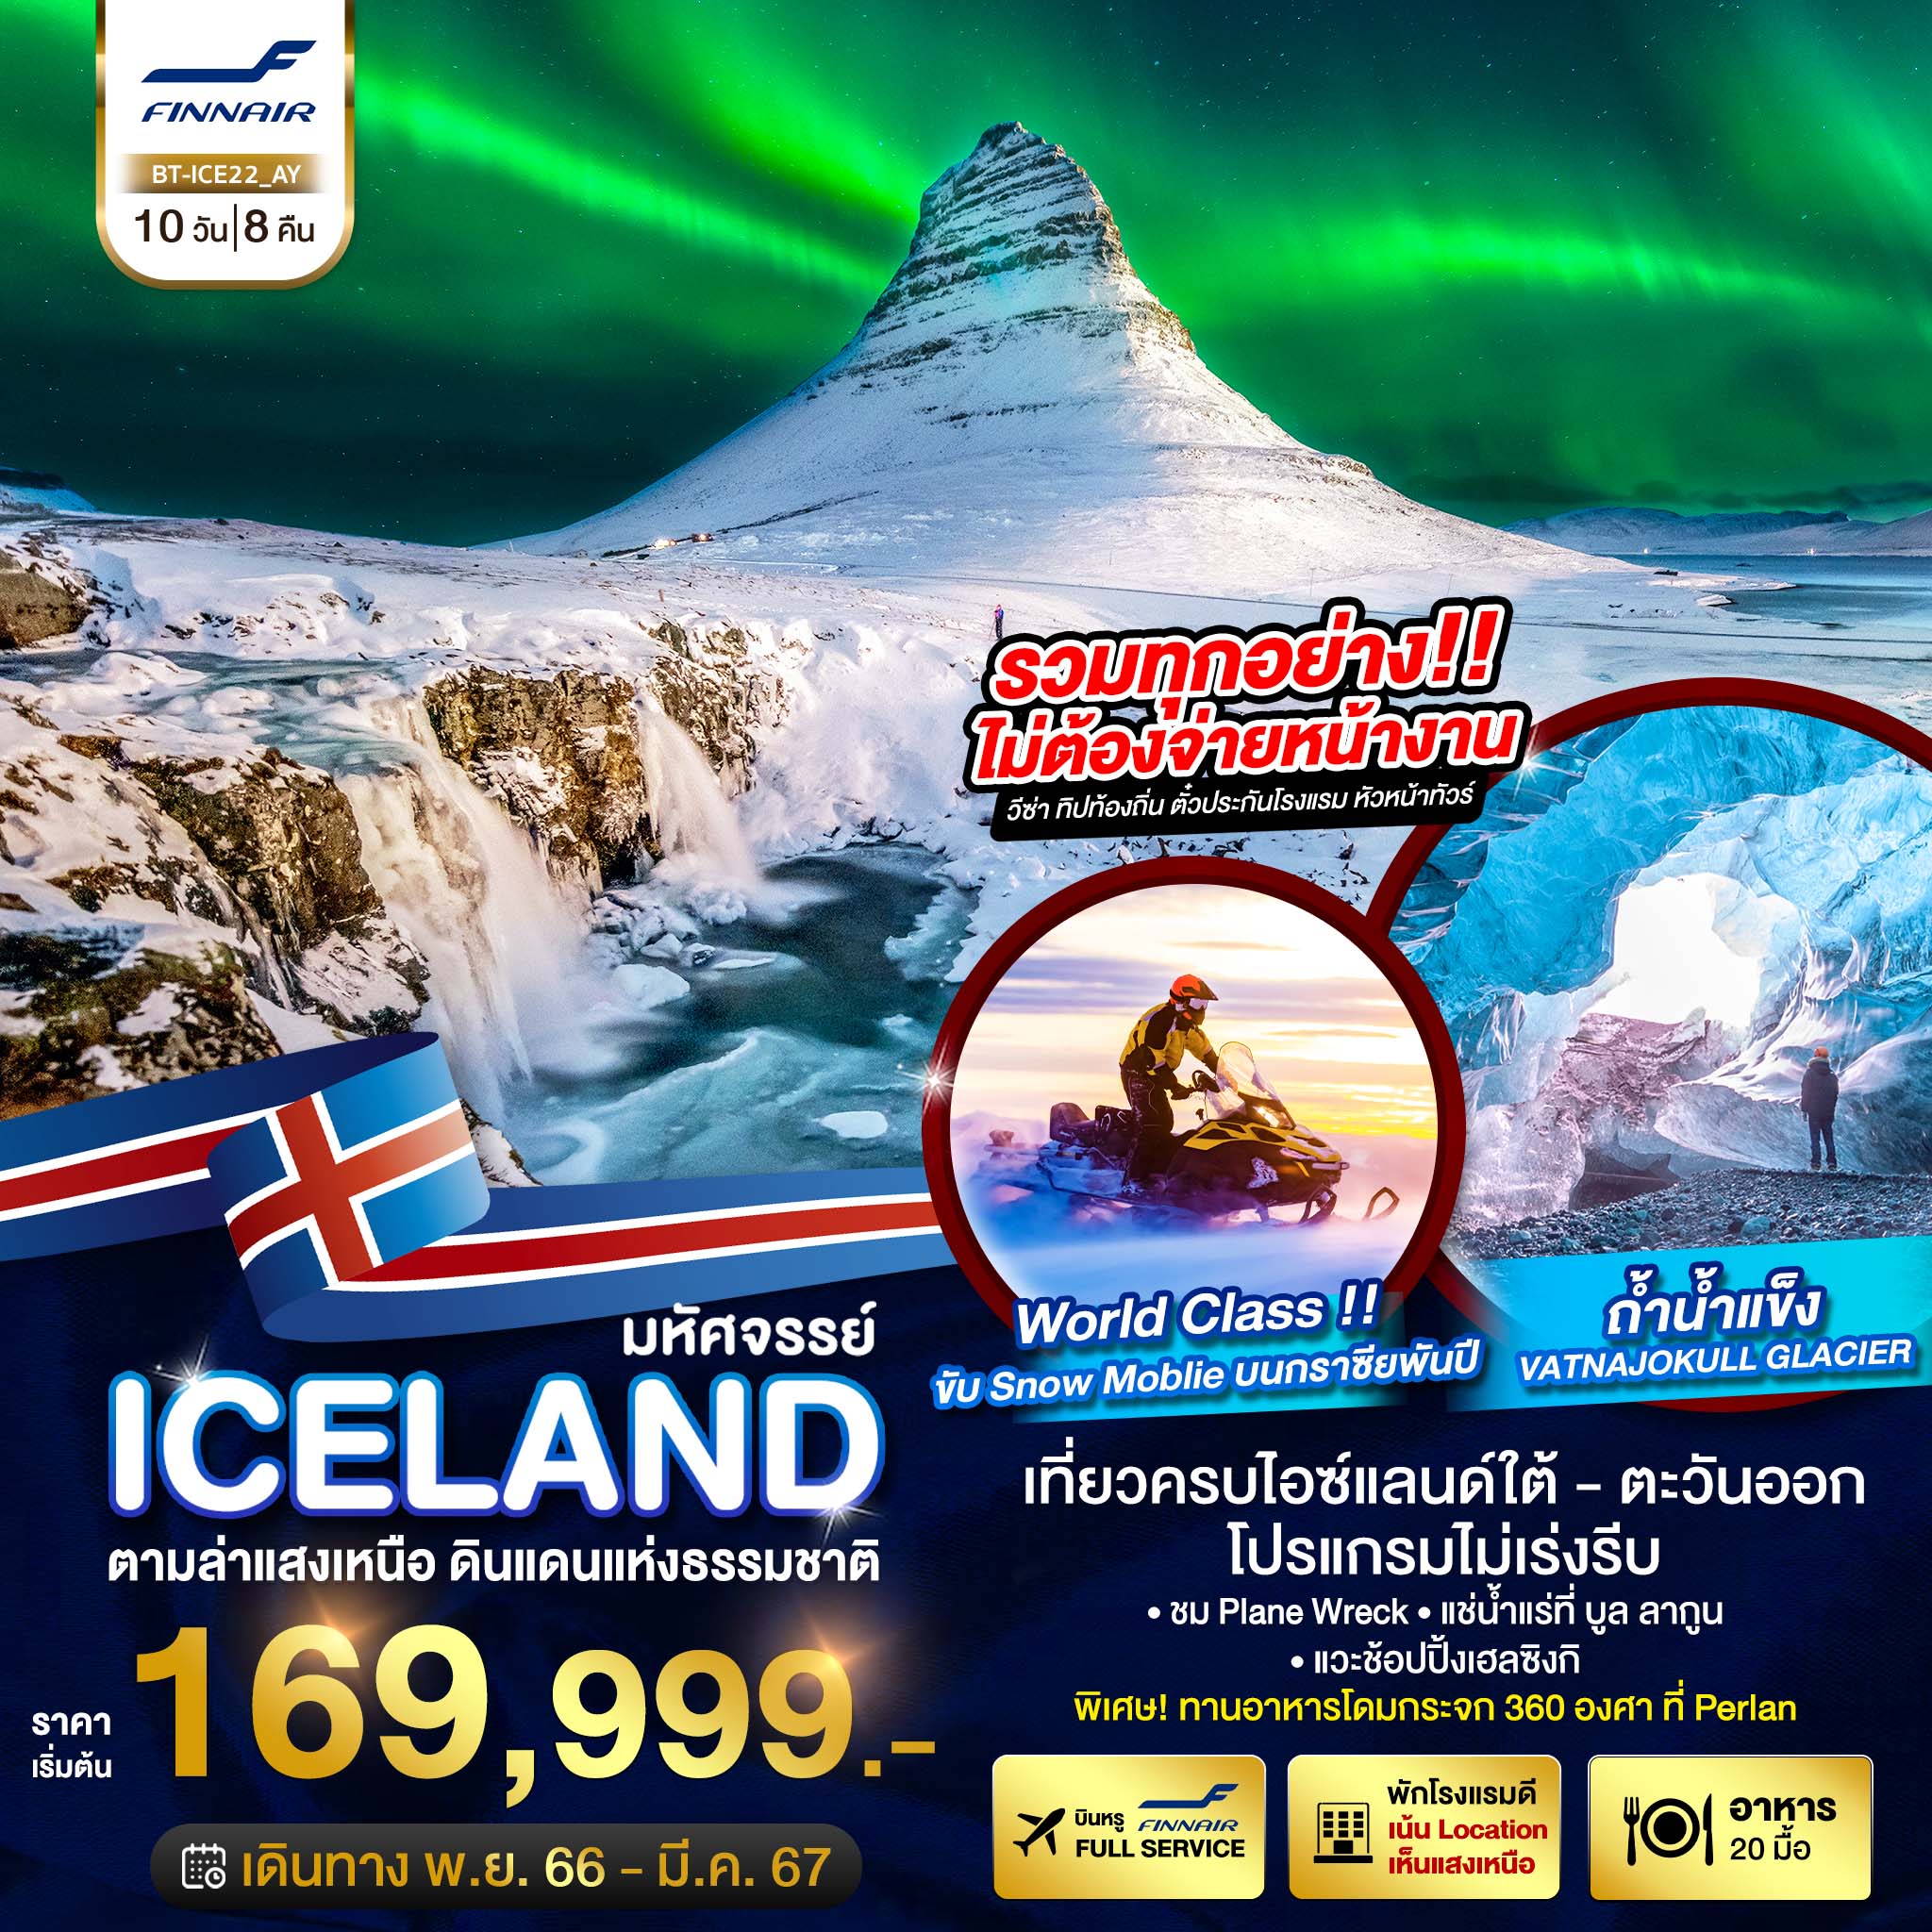 มหัศจรรย์ ICELAND 10D8N BY AY